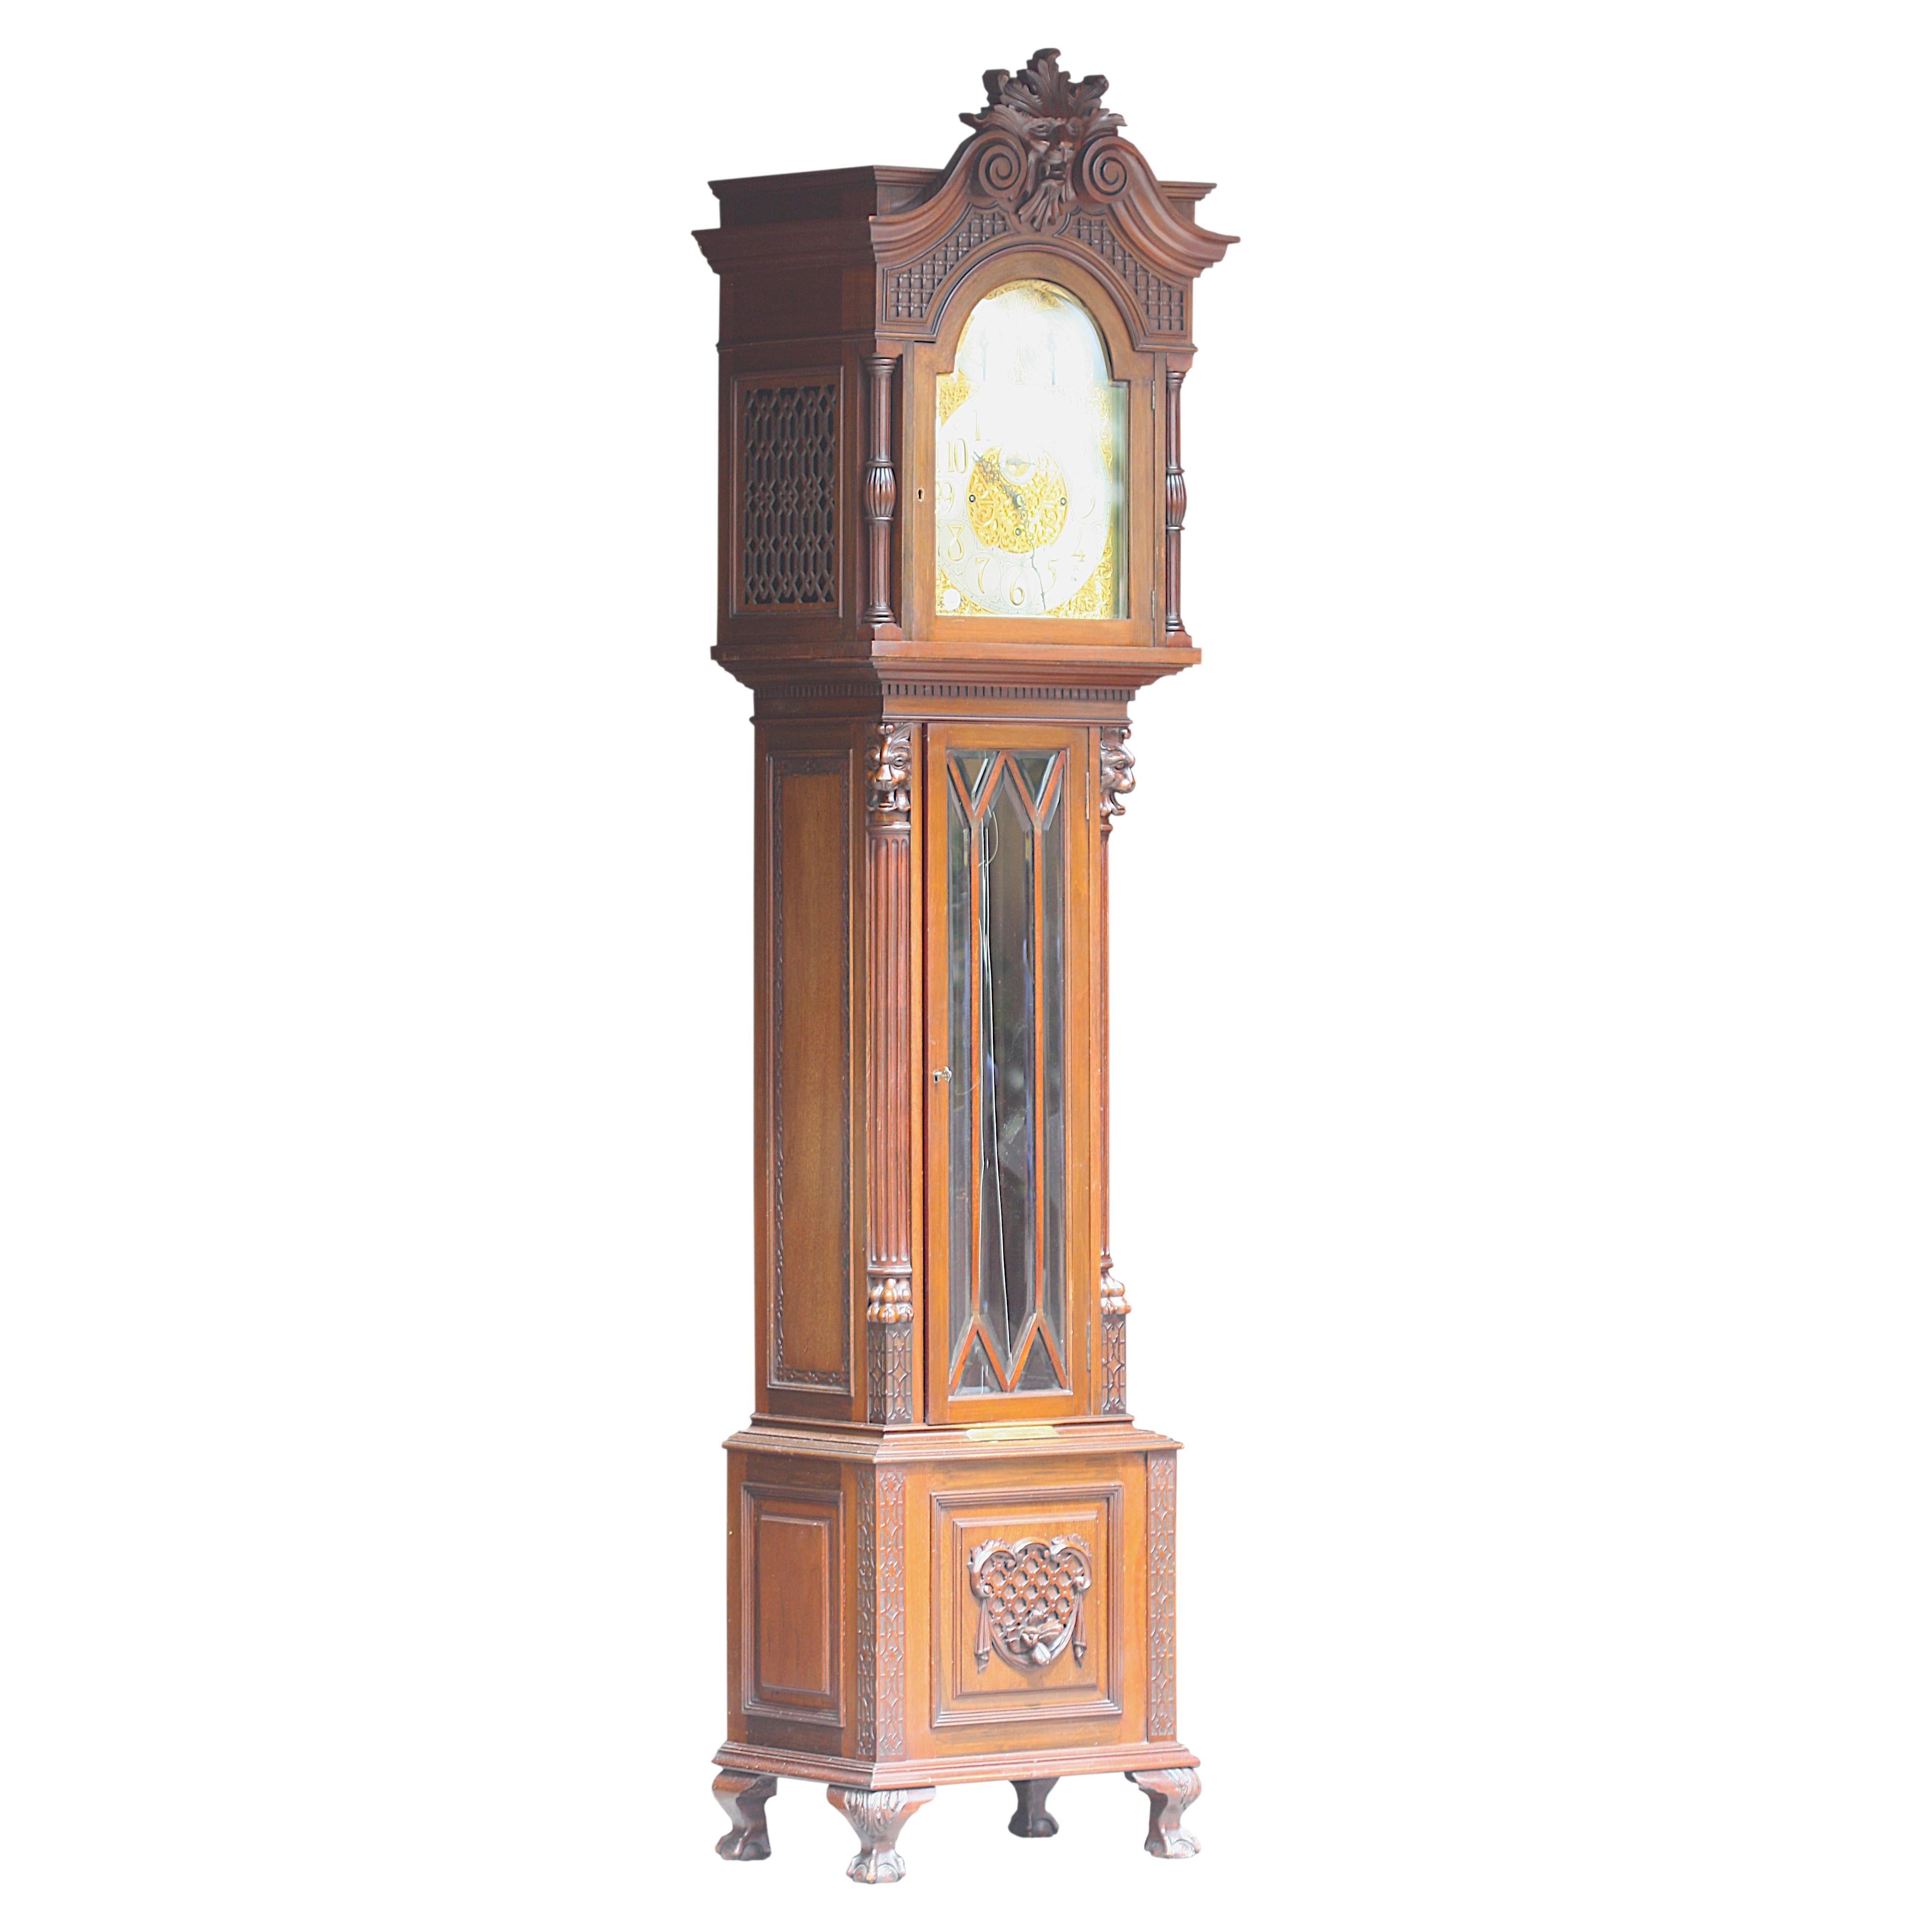 Feine englische Renaissance Revival Mahagoni Chiming Tall Case Clock.
CIRCA 1890, Russells Ltd. 
Das dreizügige Uhrwerk mit einer gewölbten Messingplatine, die mit einem allover-Ausschnitt und erhabenen Blattwerken versehen ist, ist mit einer